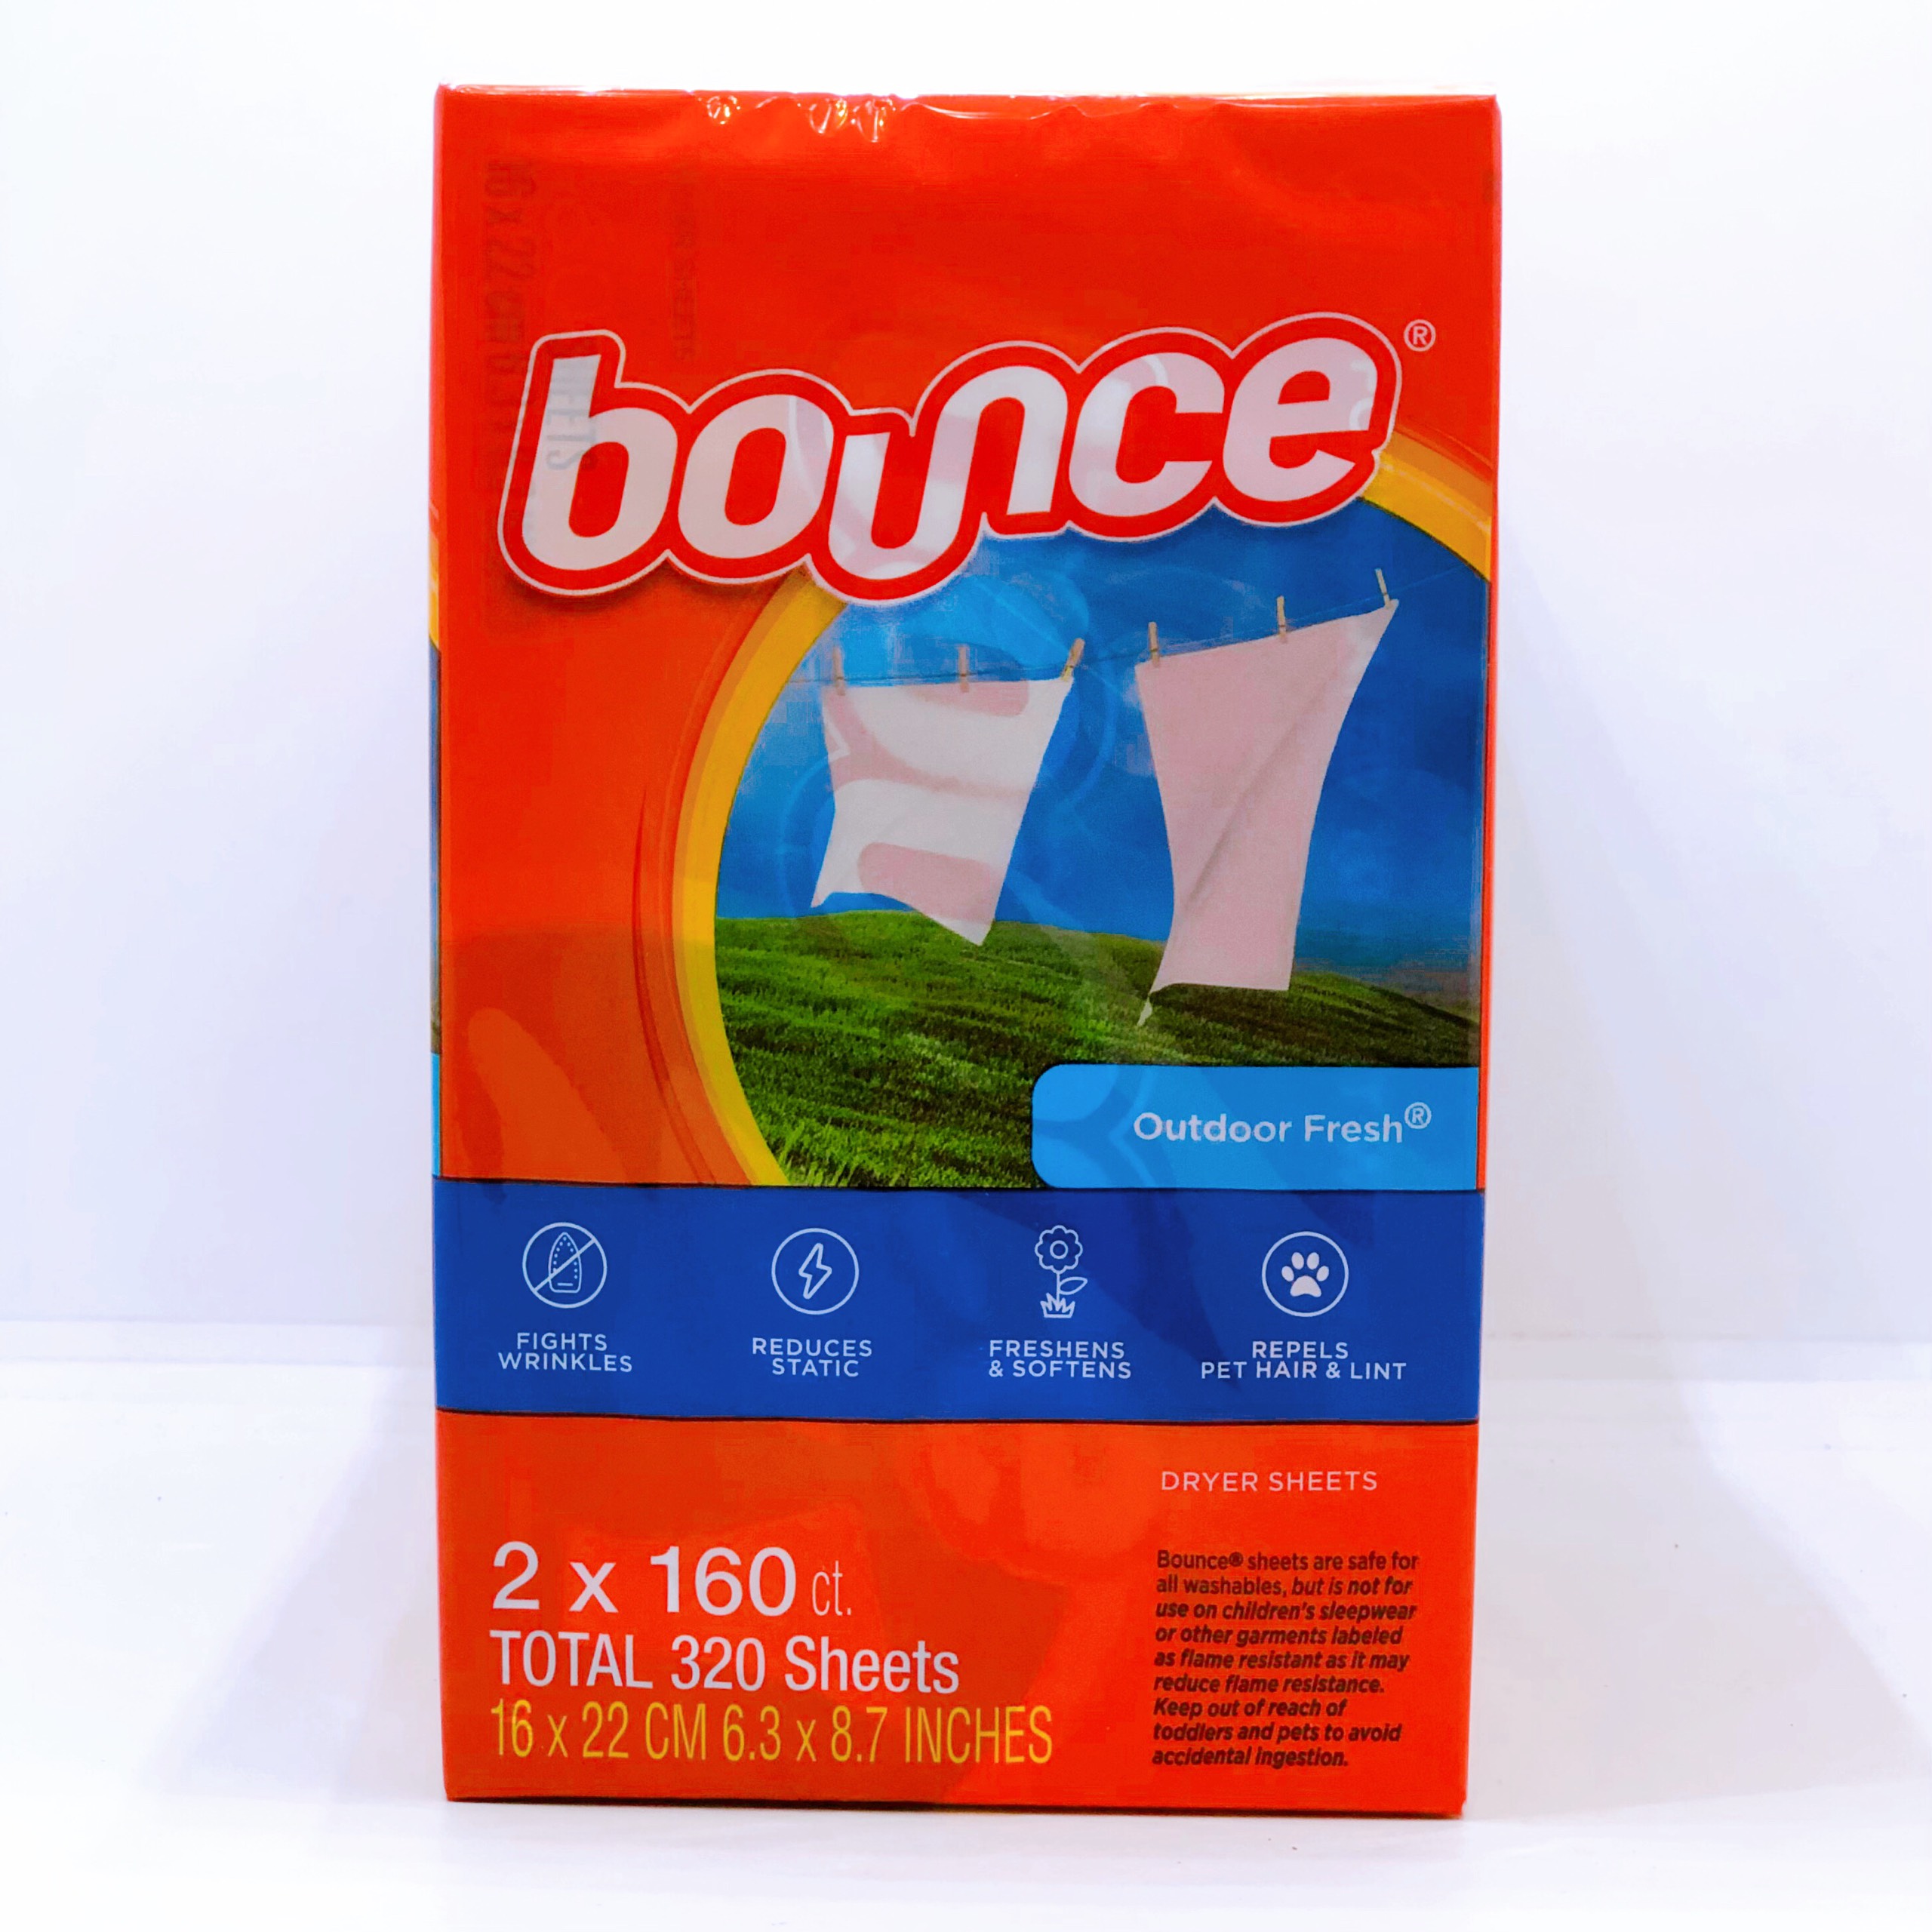 Giấy thơm và làm mềm Vải Bounce Outdoor Fresh 160 tờ - Canada